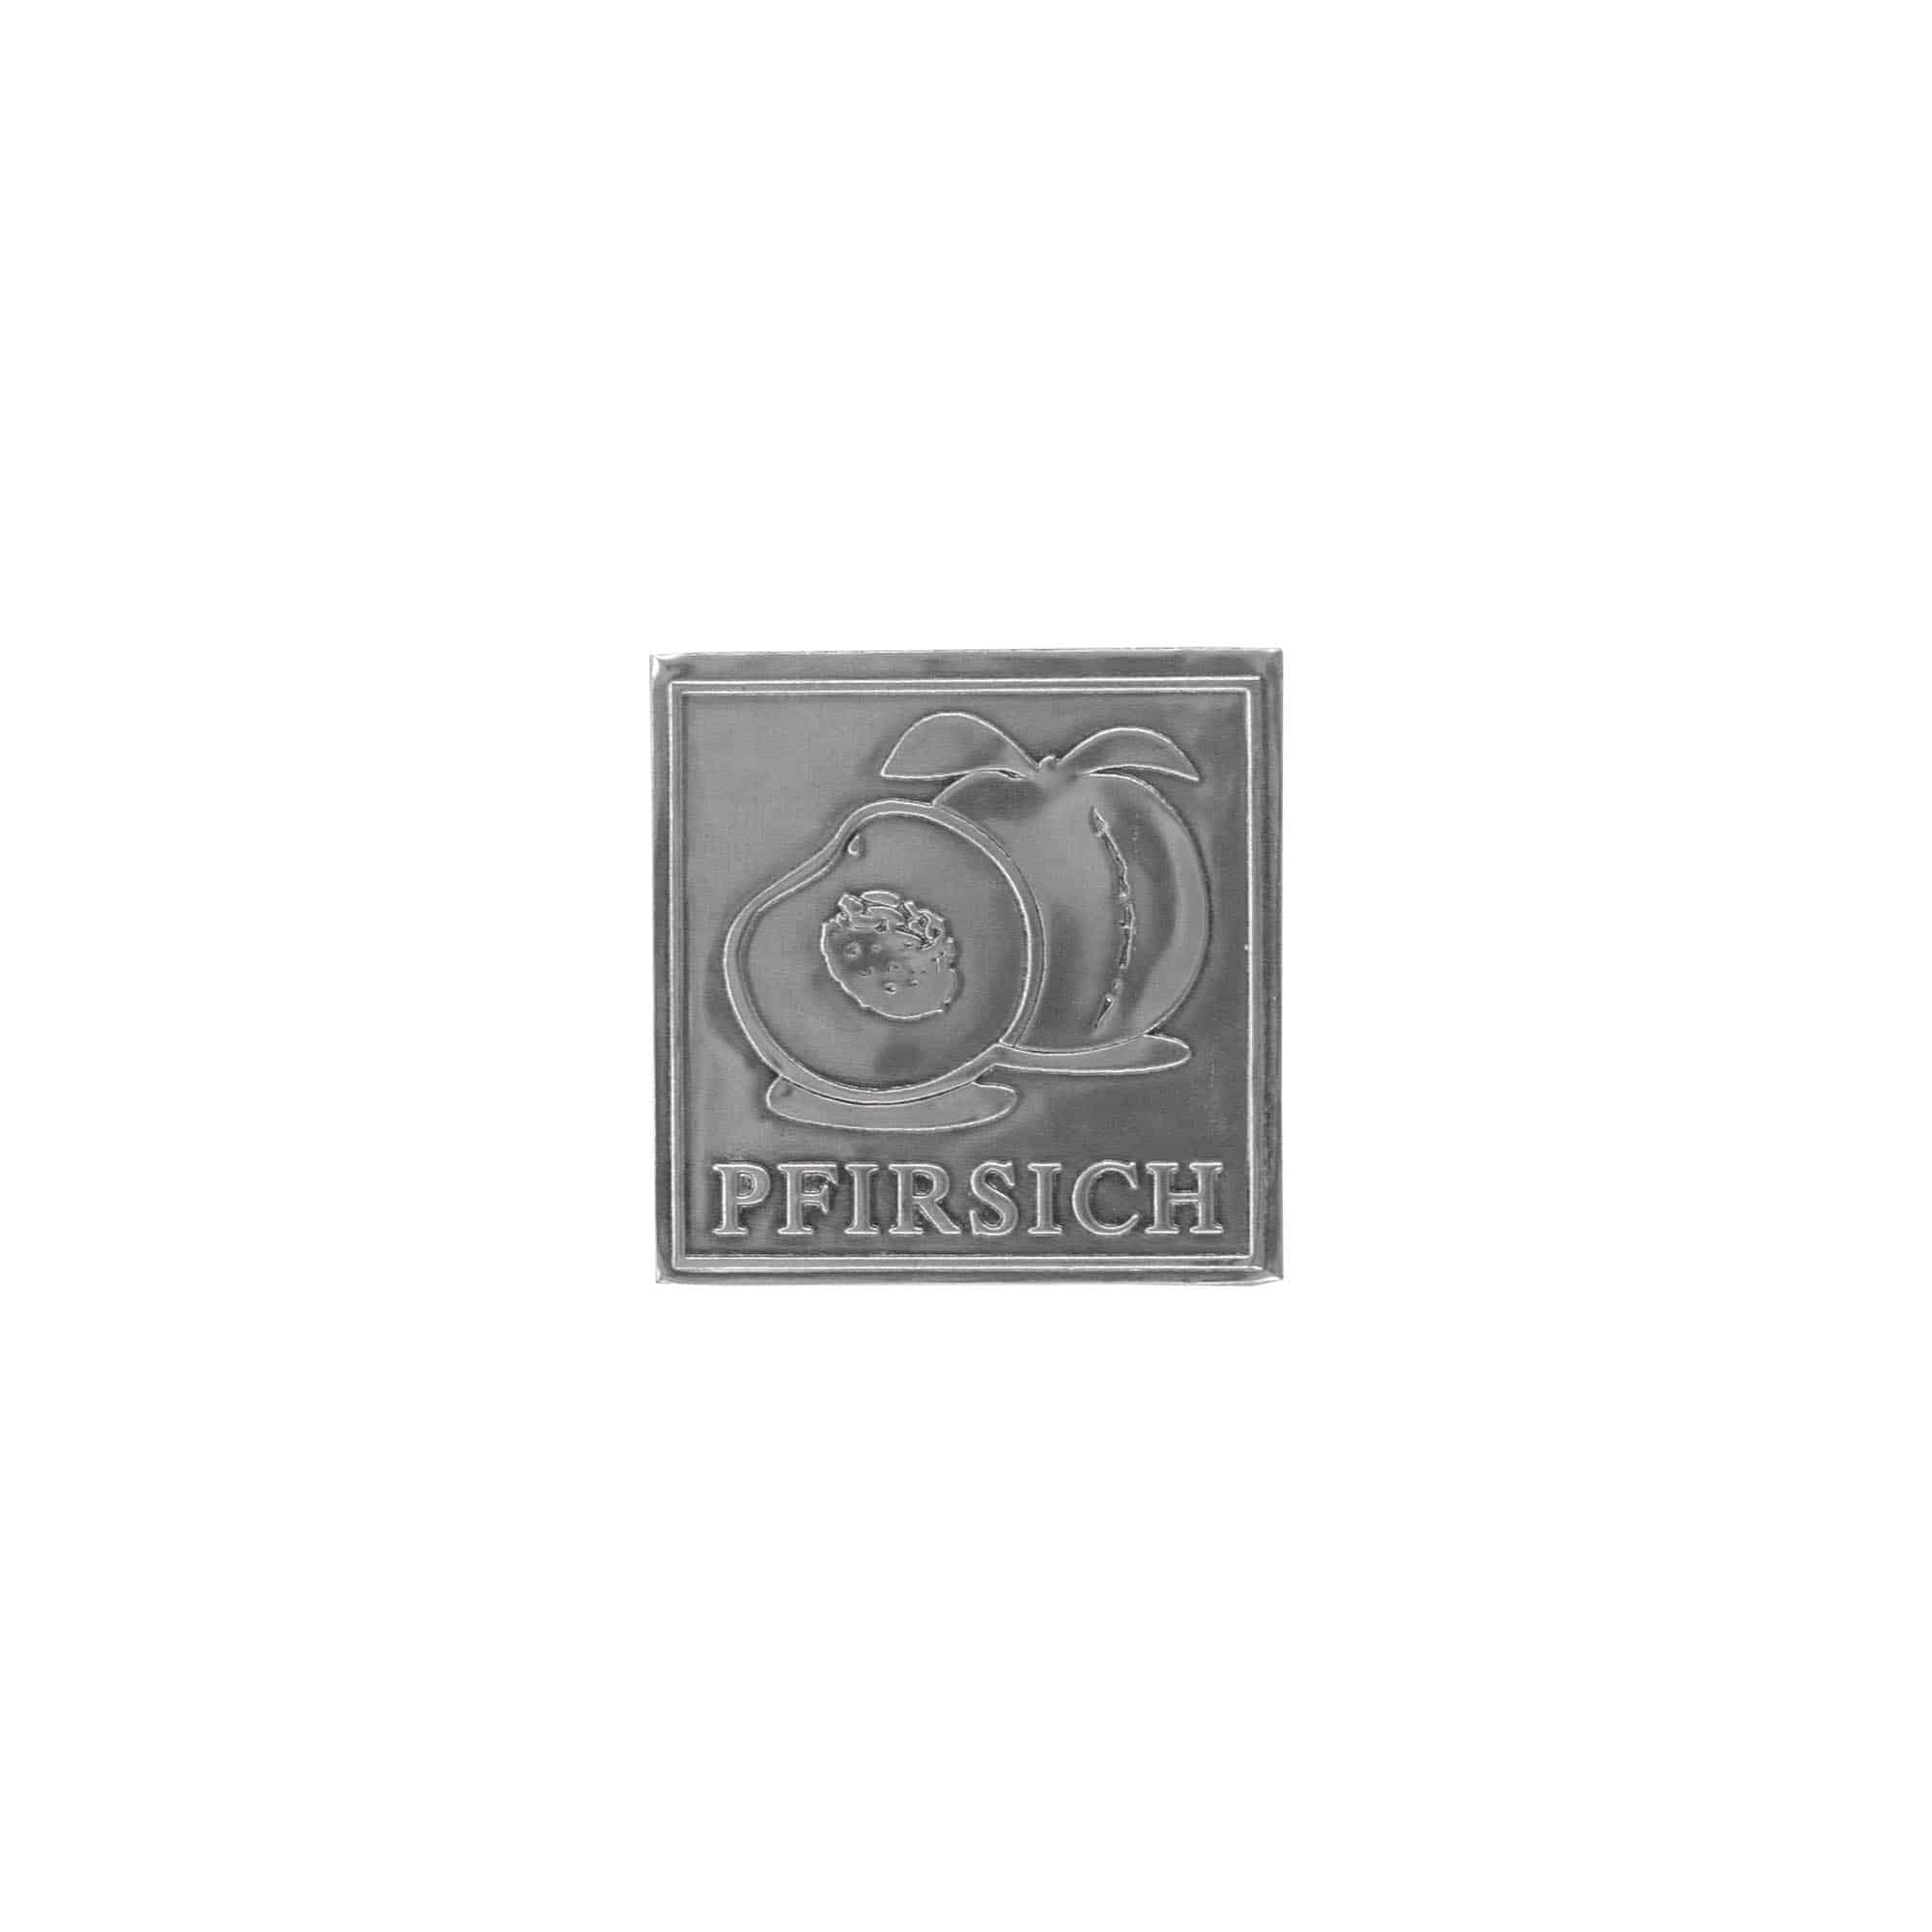 Etykieta cynowa 'Brzoskwinia', kwadratowa, metal, kolor srebrny